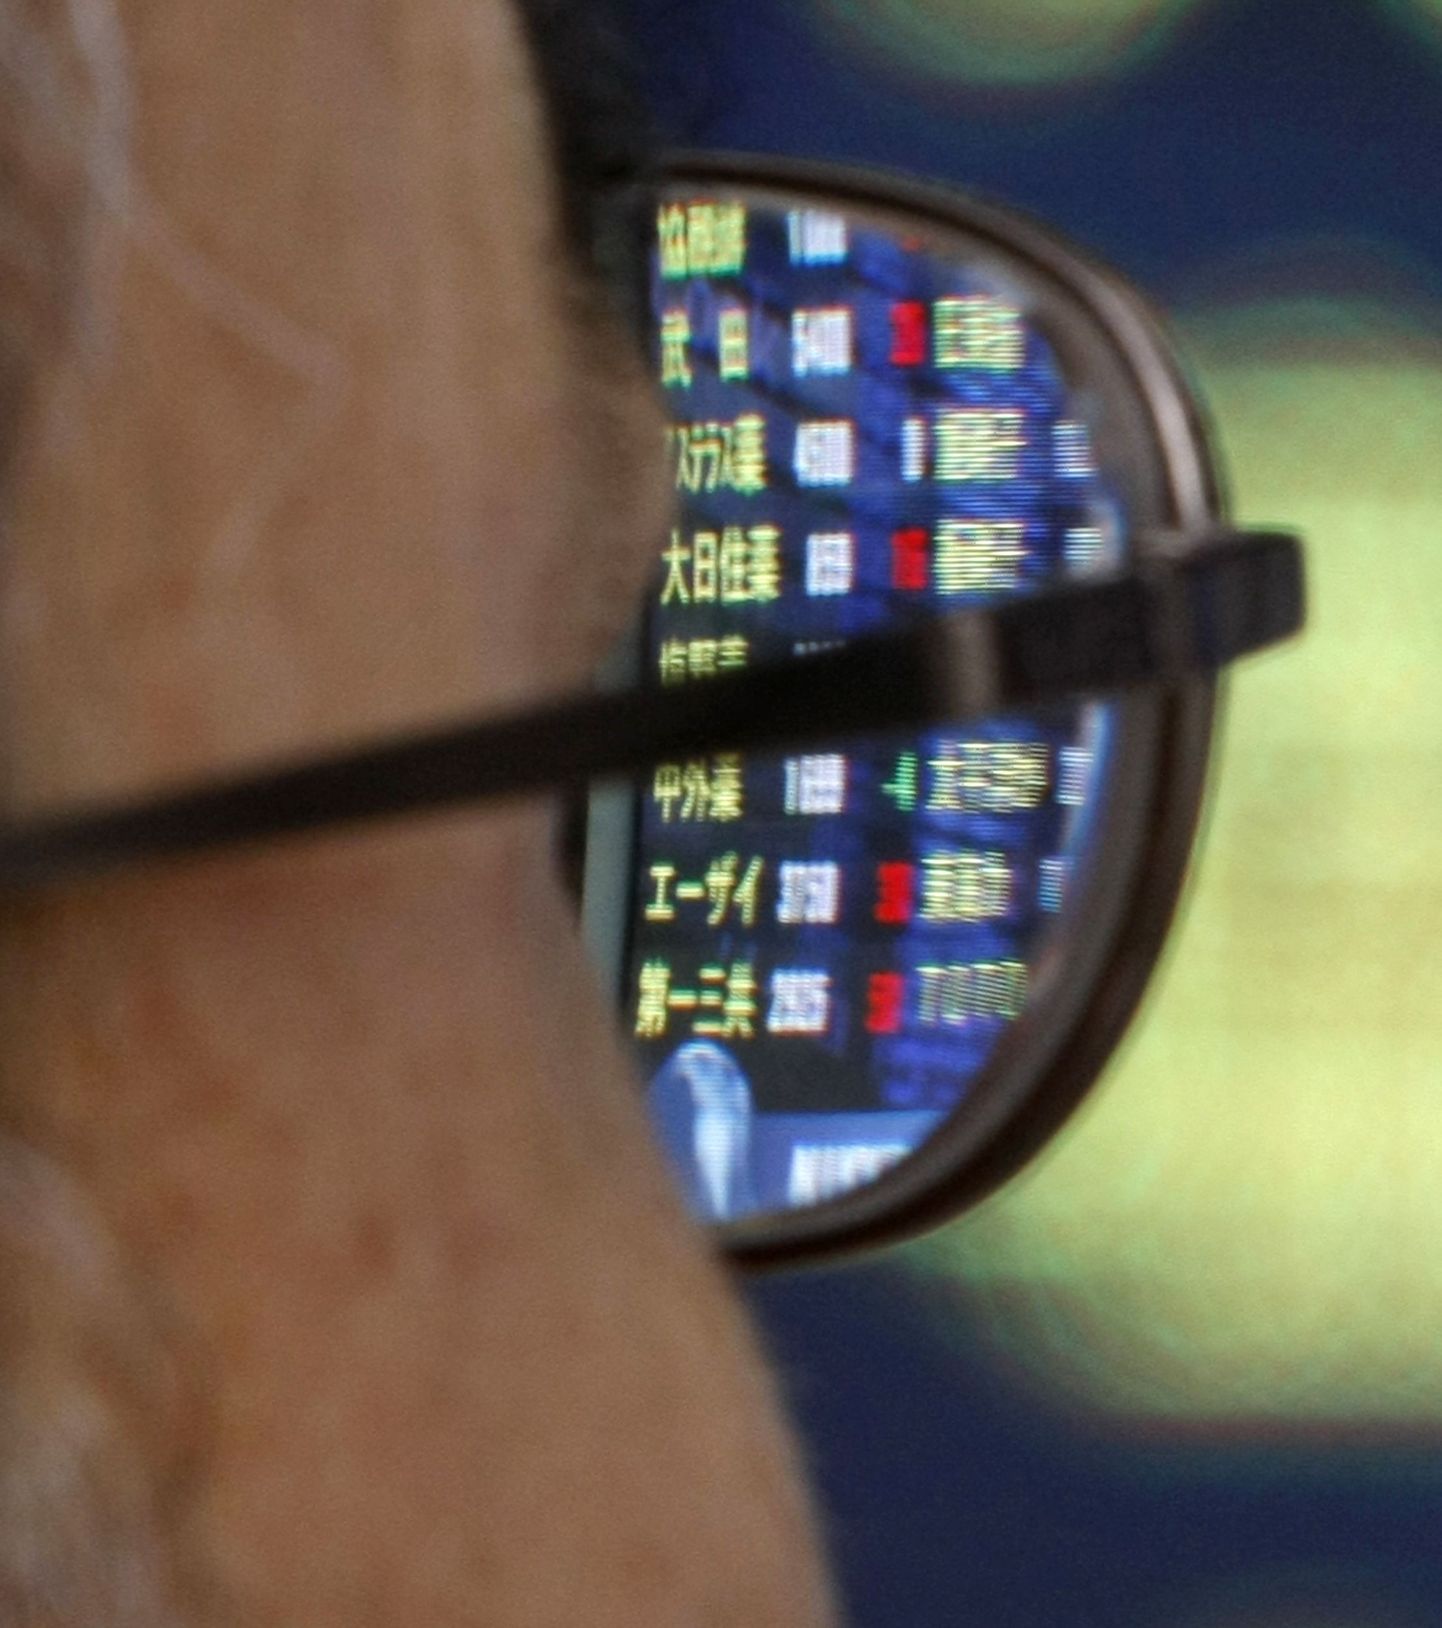 Elektrooniline aktsiahindade tabloo peegeldumas tokiolase prilliklaasilt.